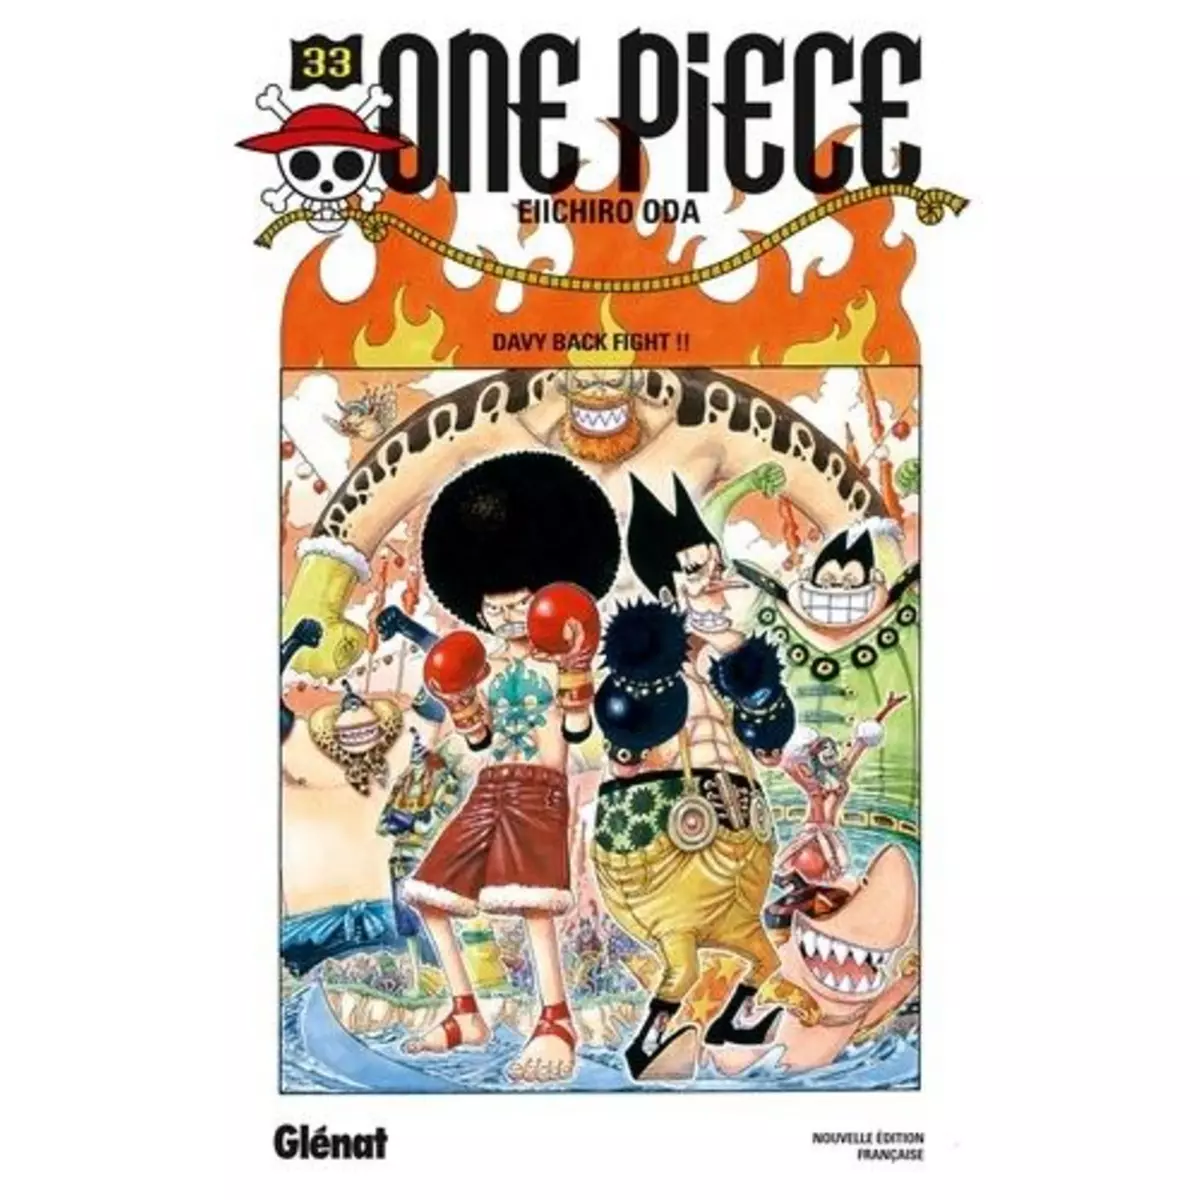  ONE PIECE TOME 33 : DAVY BACK FIGHT !!, Oda Eiichirô